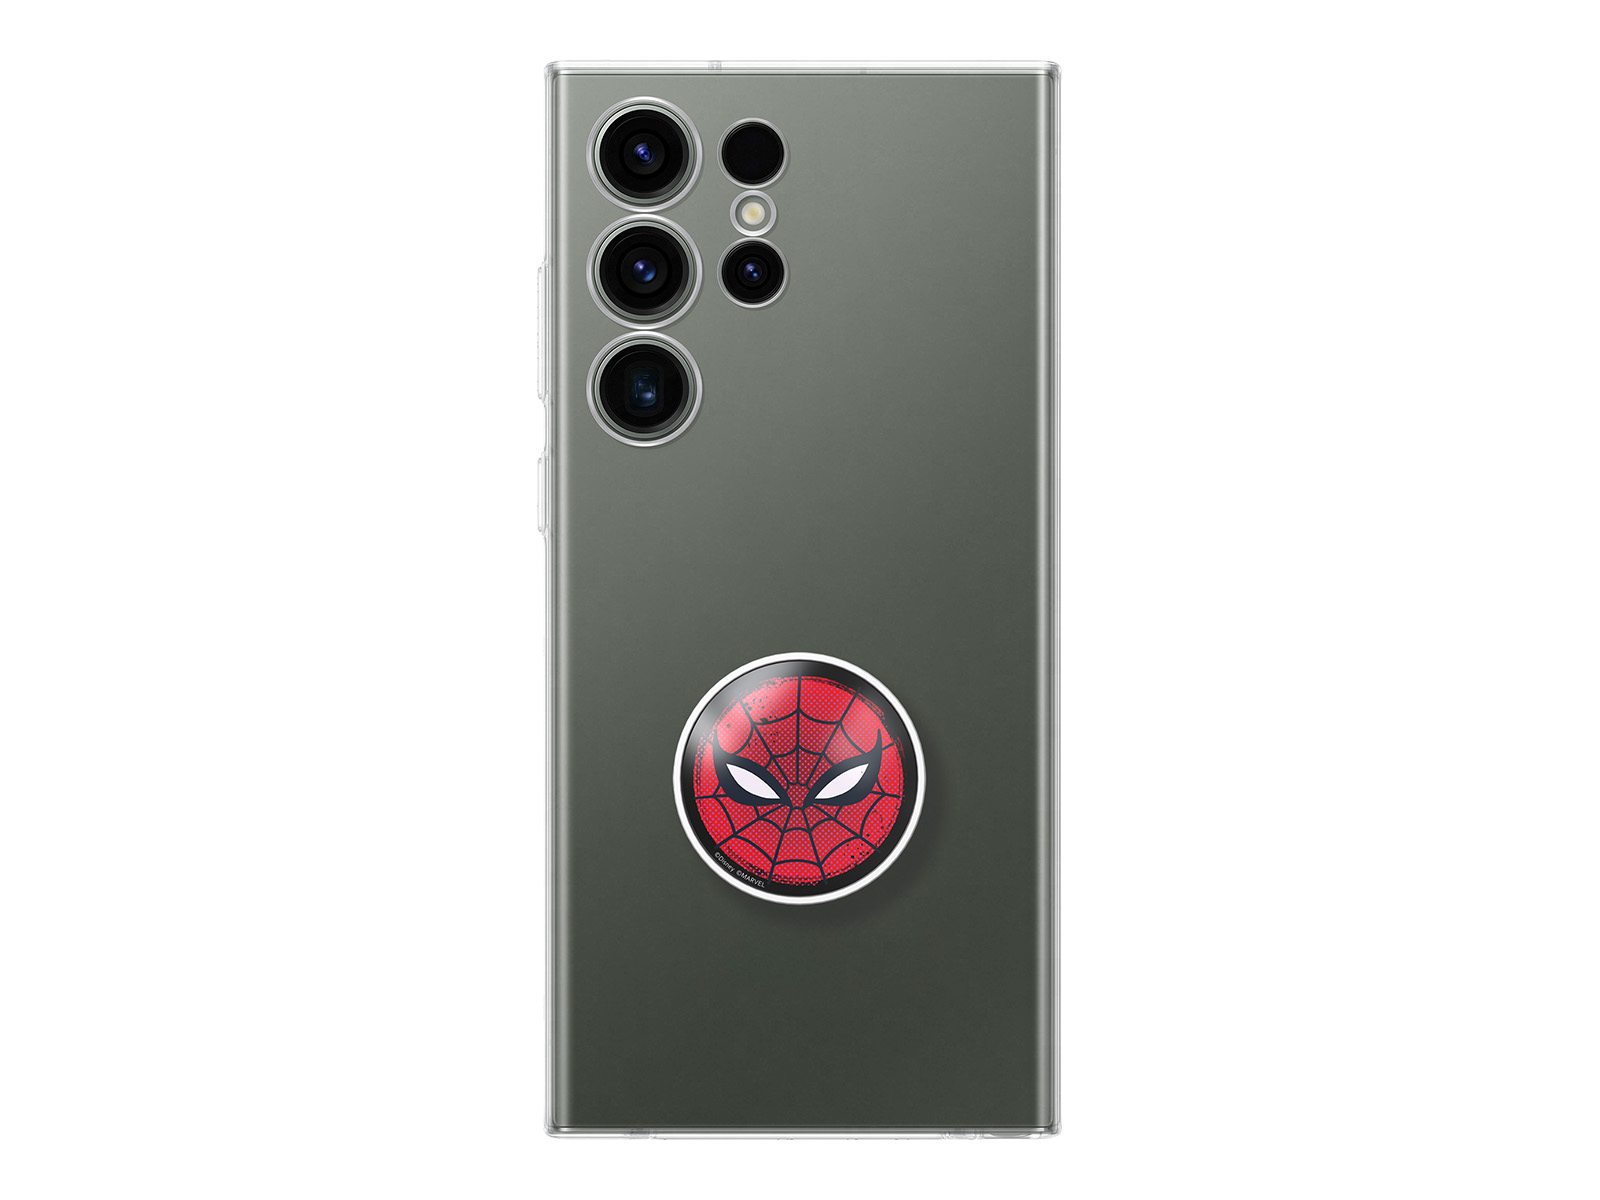 Funda para Xiaomi Redmi Note 9 Oficial de Marvel Spiderman Torso - Marvel